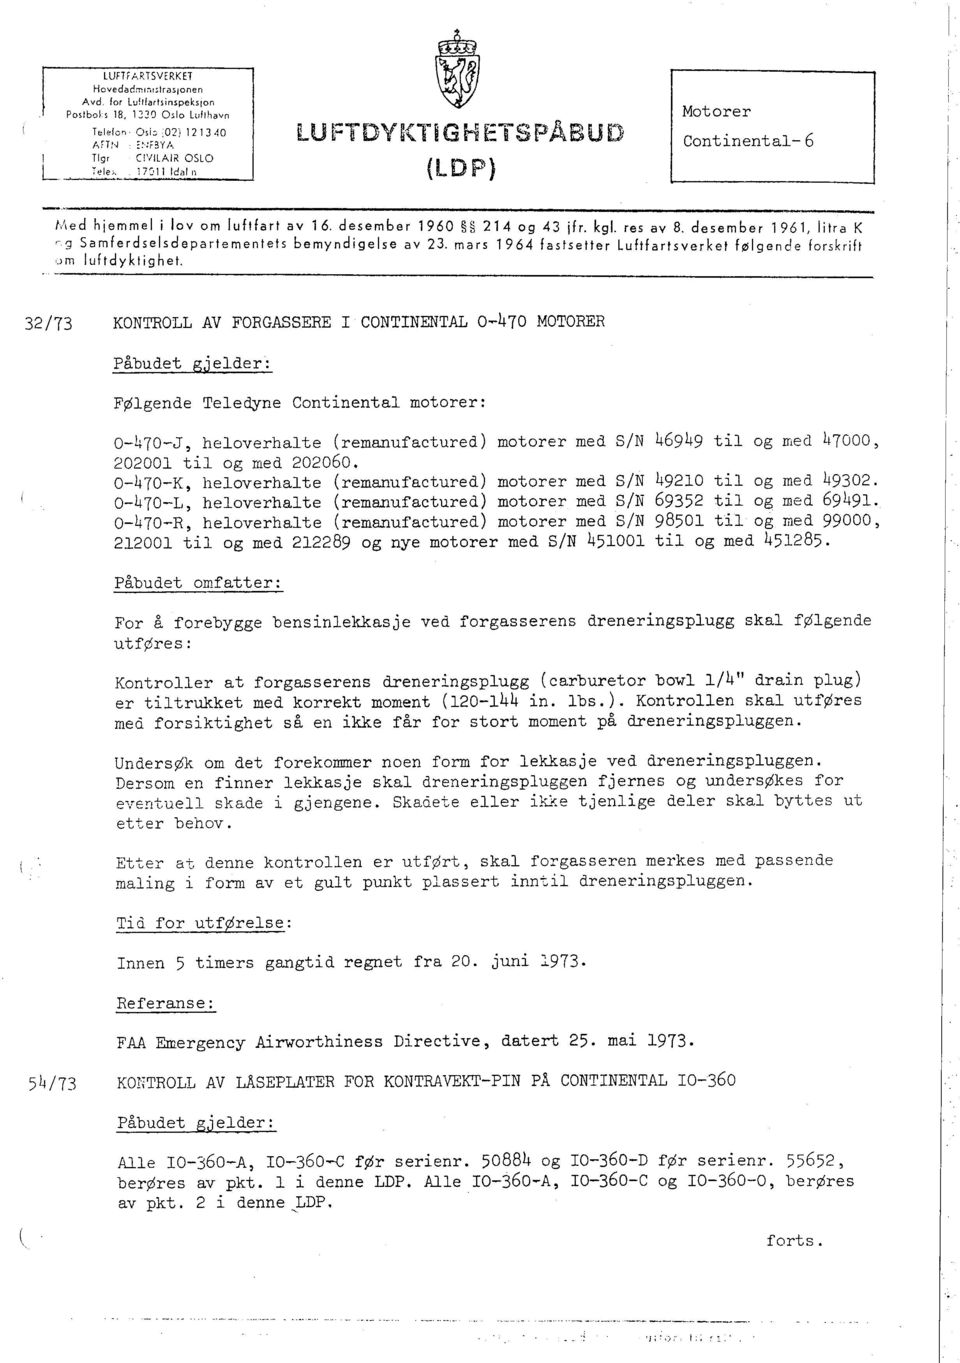 res av 8, desember 1961, litra K '9 Samferdselsdepartementets bemyndigelse av 23, mars 1964 fastsetter Luftfartsverket følgende forskrift,~)m luftdyklighet.